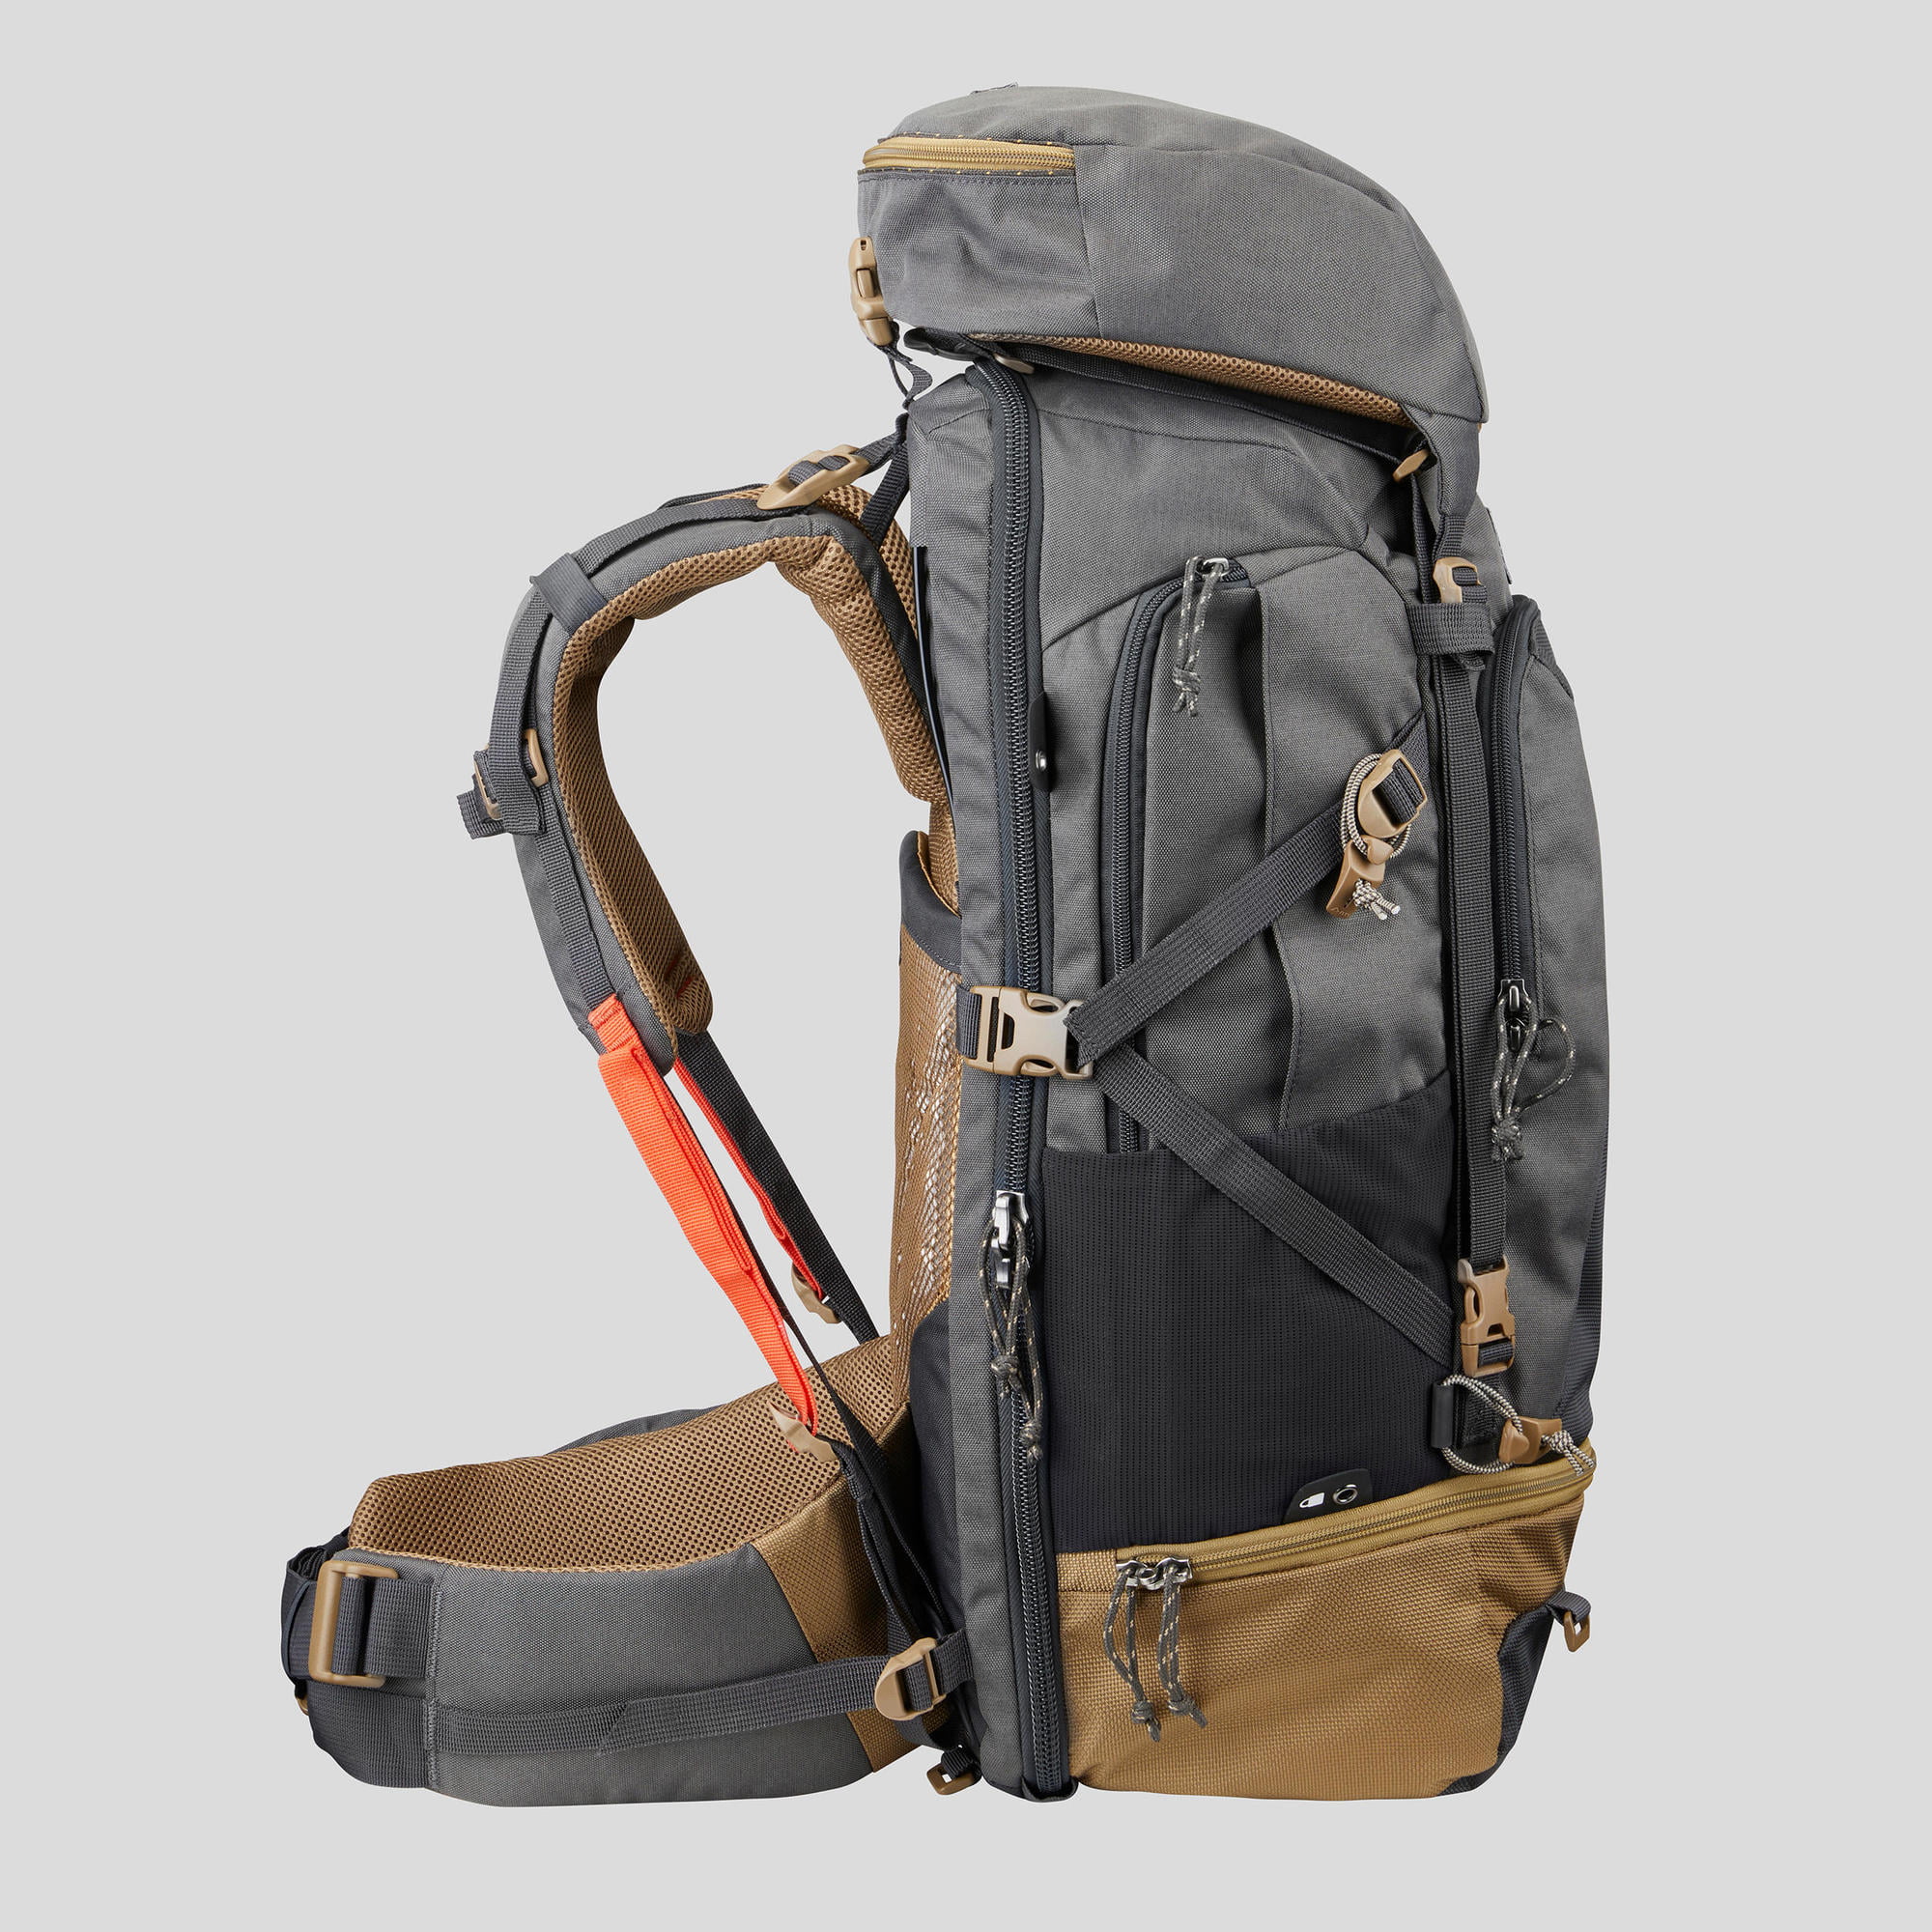 Bedelen stel je voor Zuivelproducten Decathlon Travel 500, 50 L Hiking Backpack, Men's - Walmart.com